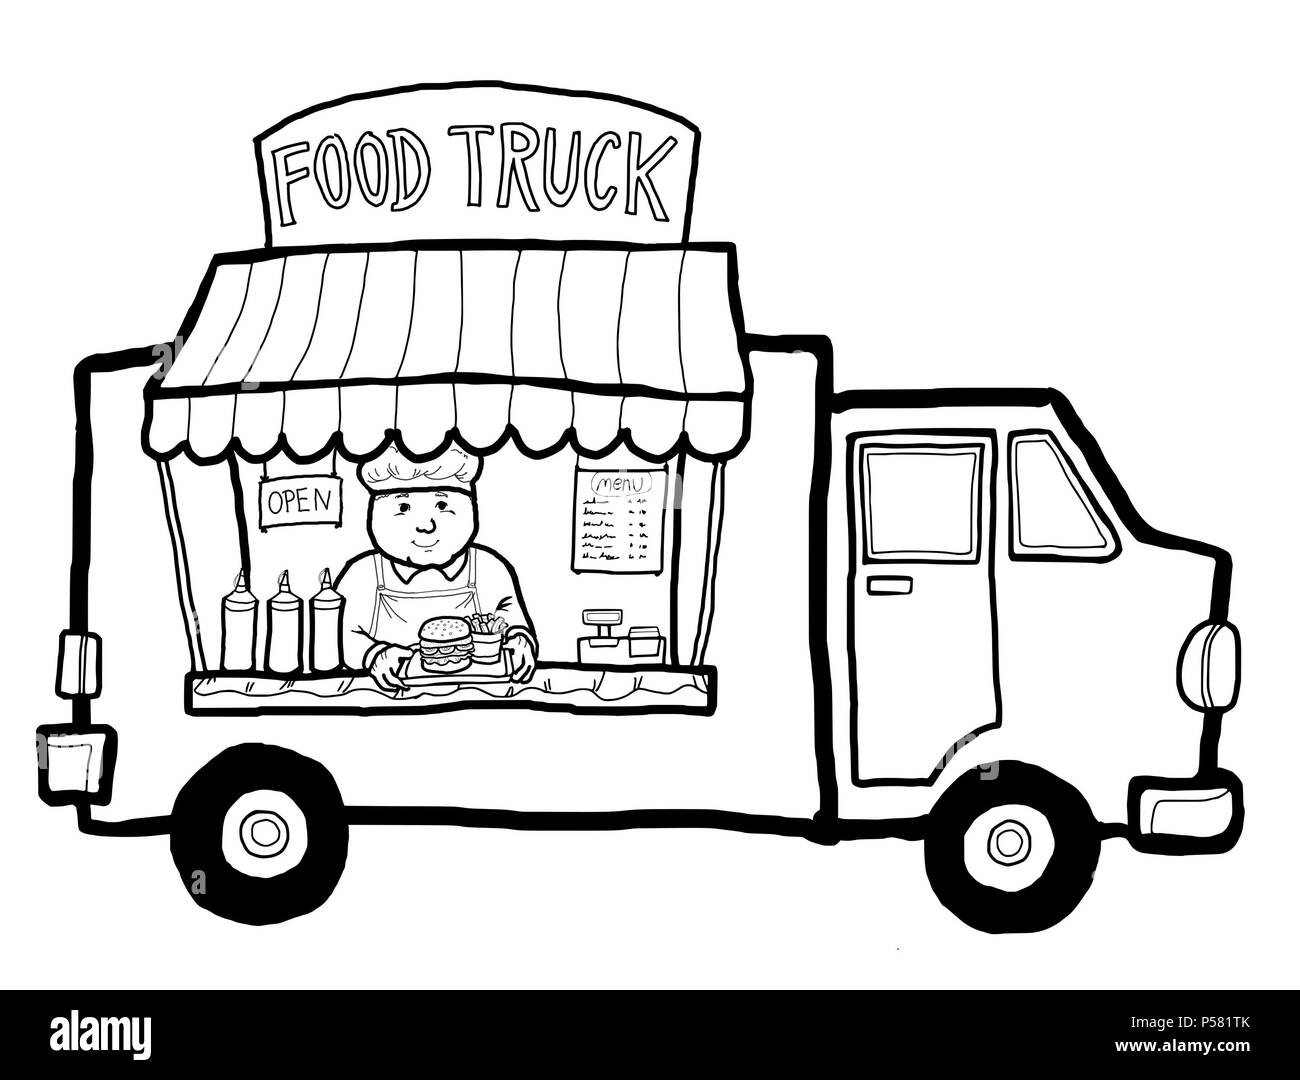 Eine Street Food Truck in der Stadt verkaufen, nehmen Essen und Trinken hamburger. Stockfoto